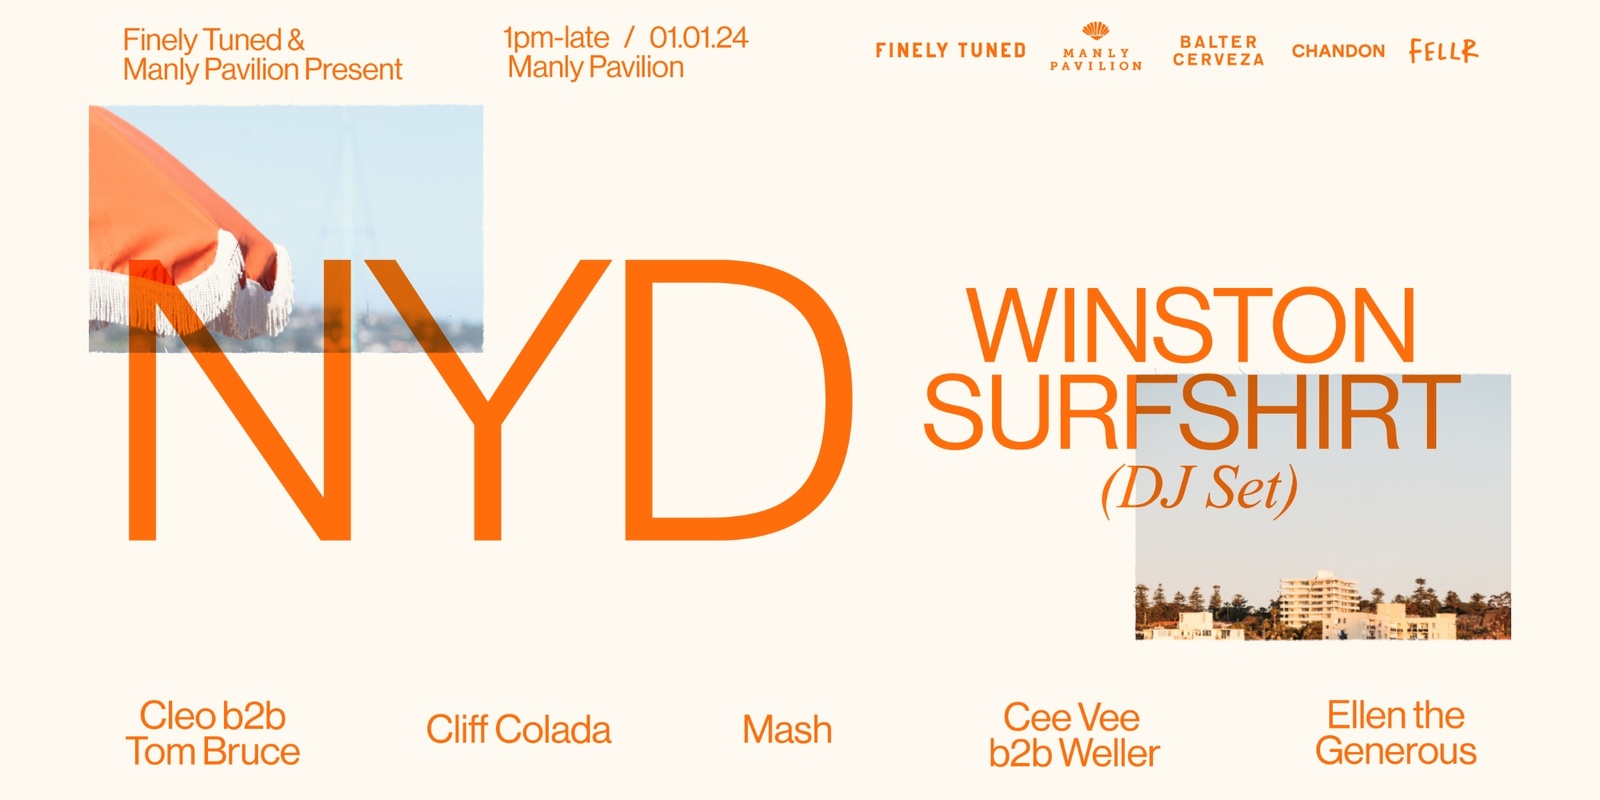 Banner image for NYD at Manly Pavilion ft. Winston Surfshirt (DJ Set)